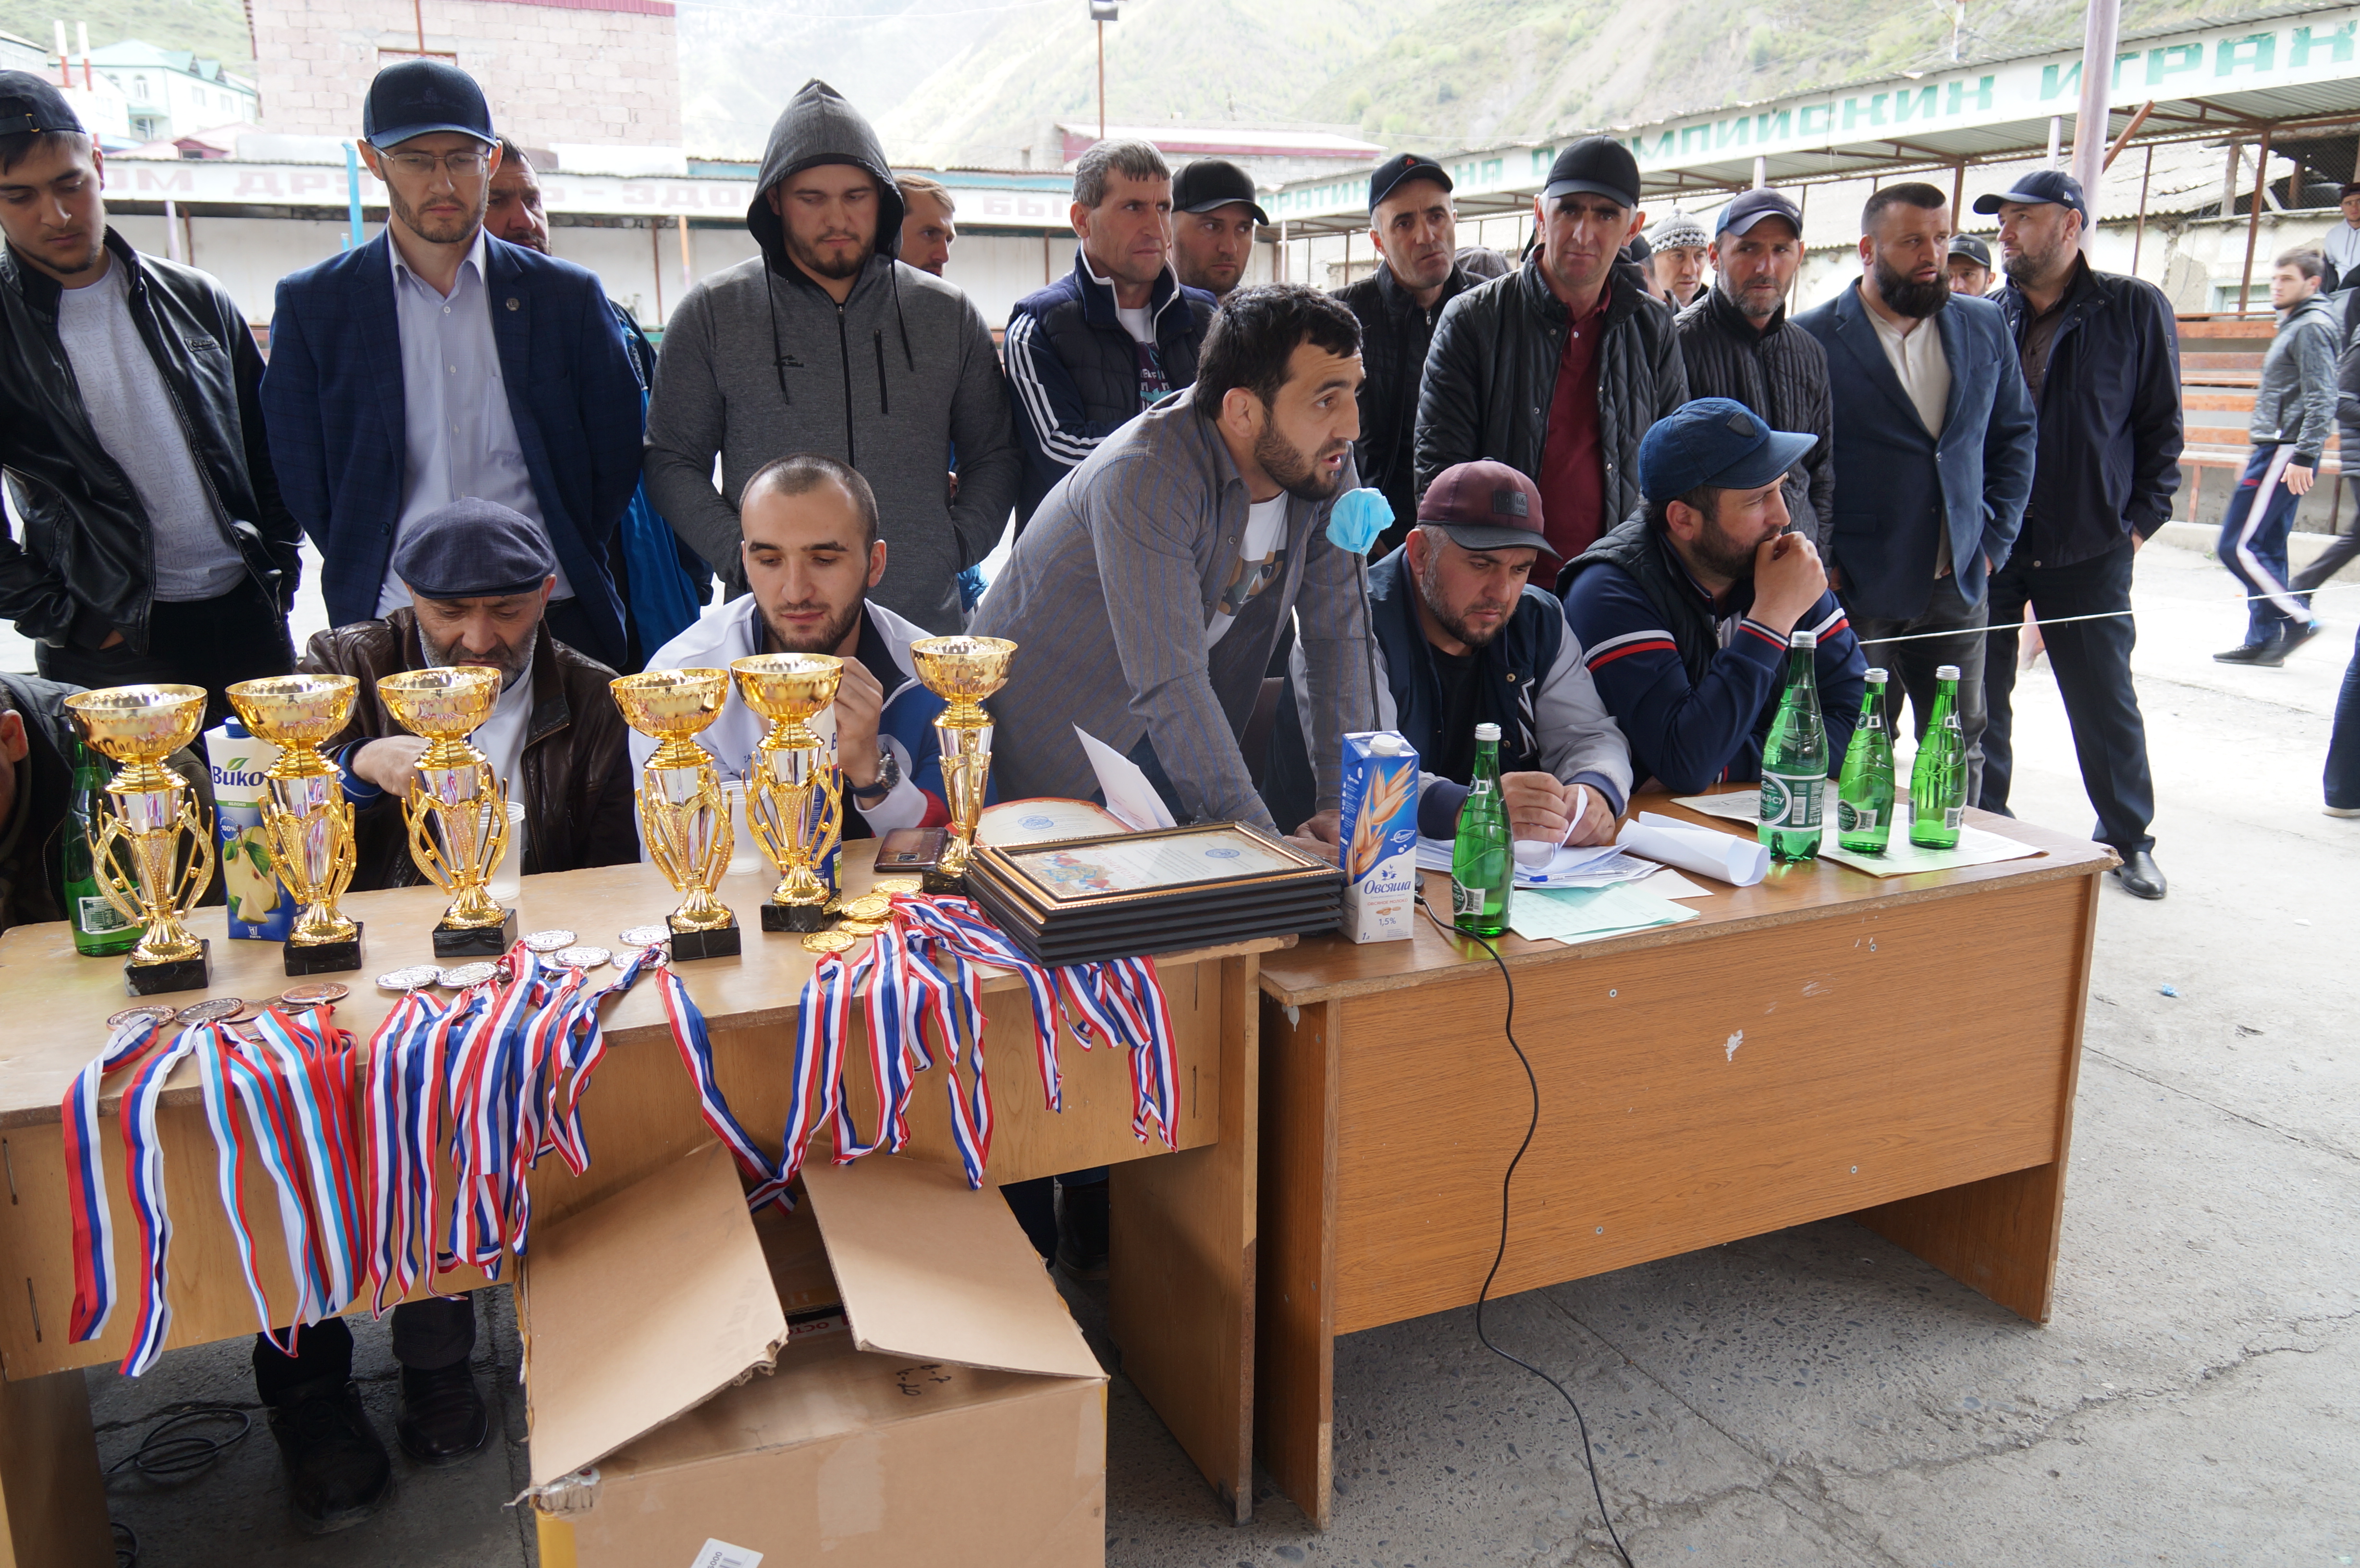 4 мая, в спорткомплексе им Султана Ибрагимова, прошёл открытый турнир по боксу среди школьников Тляратинского района.